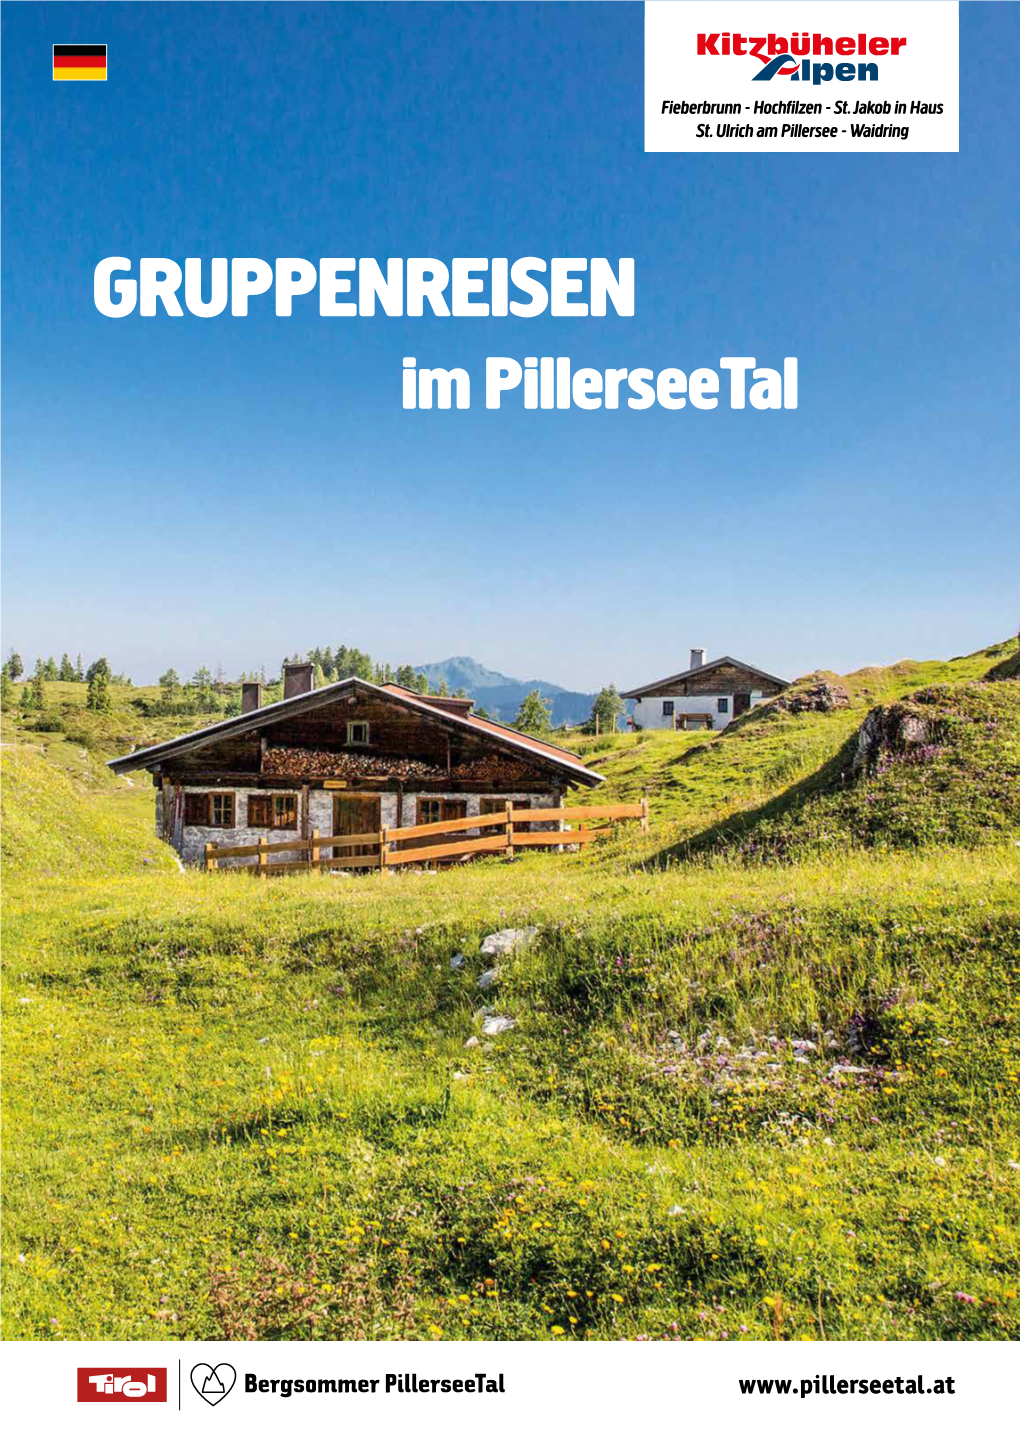 Waidring Gibt Es Mehr Als Genug Freizeitmöglichkeiten Für Ihren Perfekten Urlaub Im Pillerseetal in Tirol!